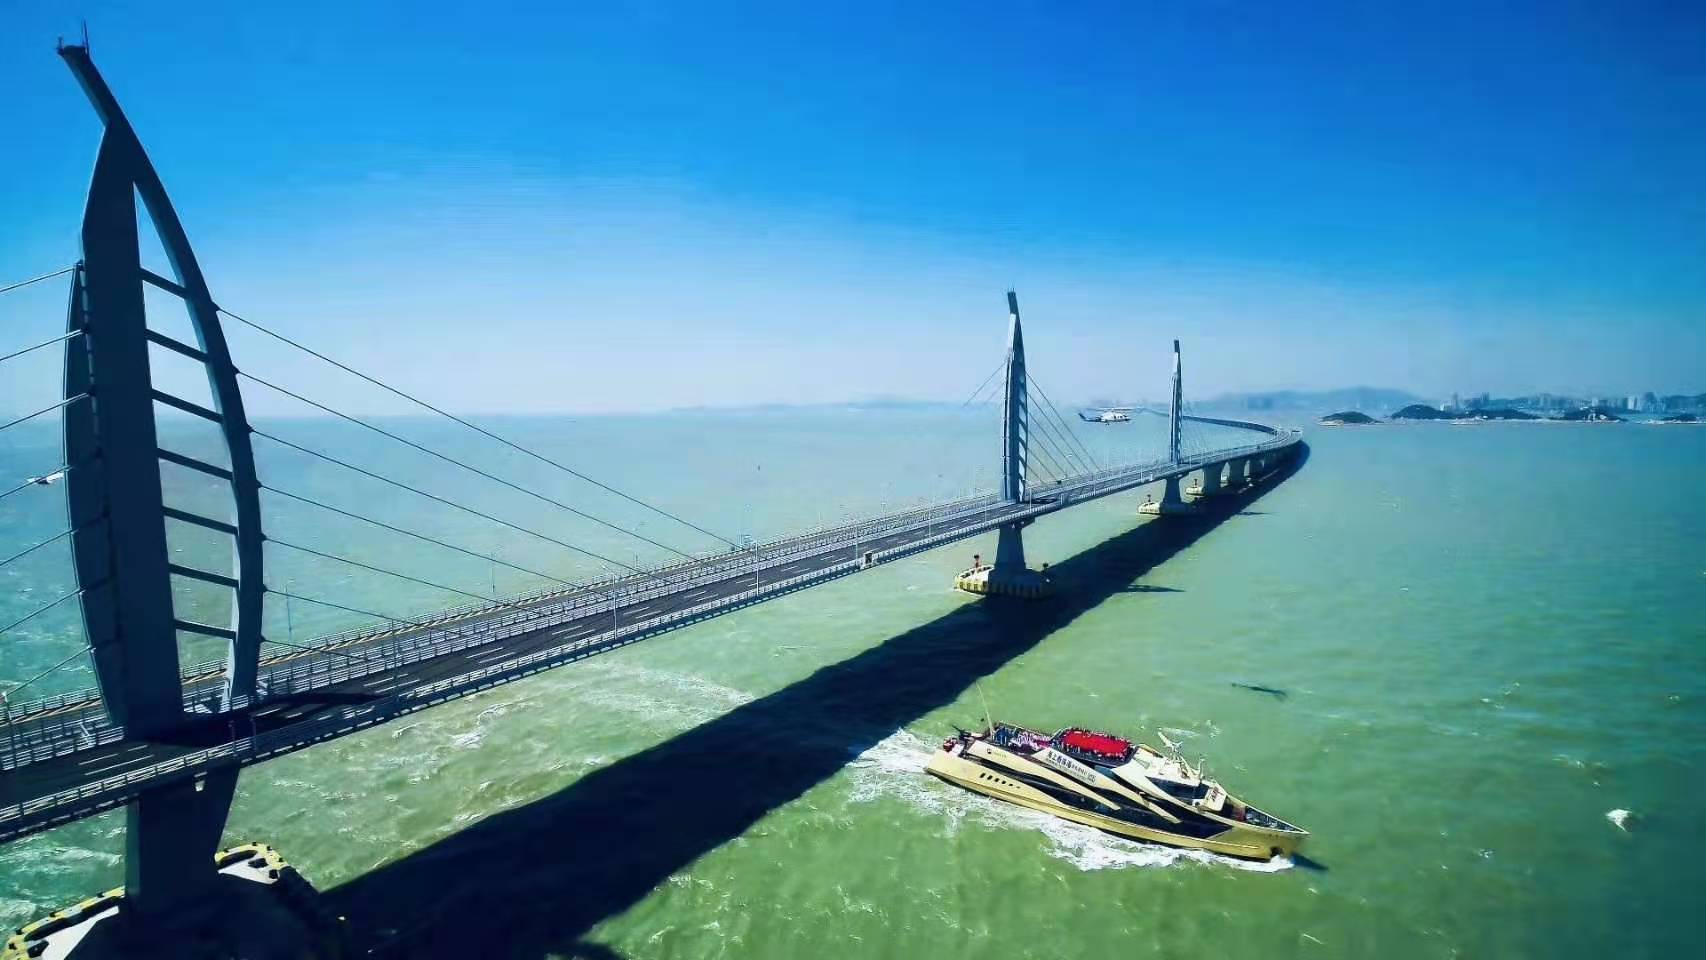 港珠澳大桥像是在大海深处"穿针",构筑起跨海通道在这里,全视角看大桥